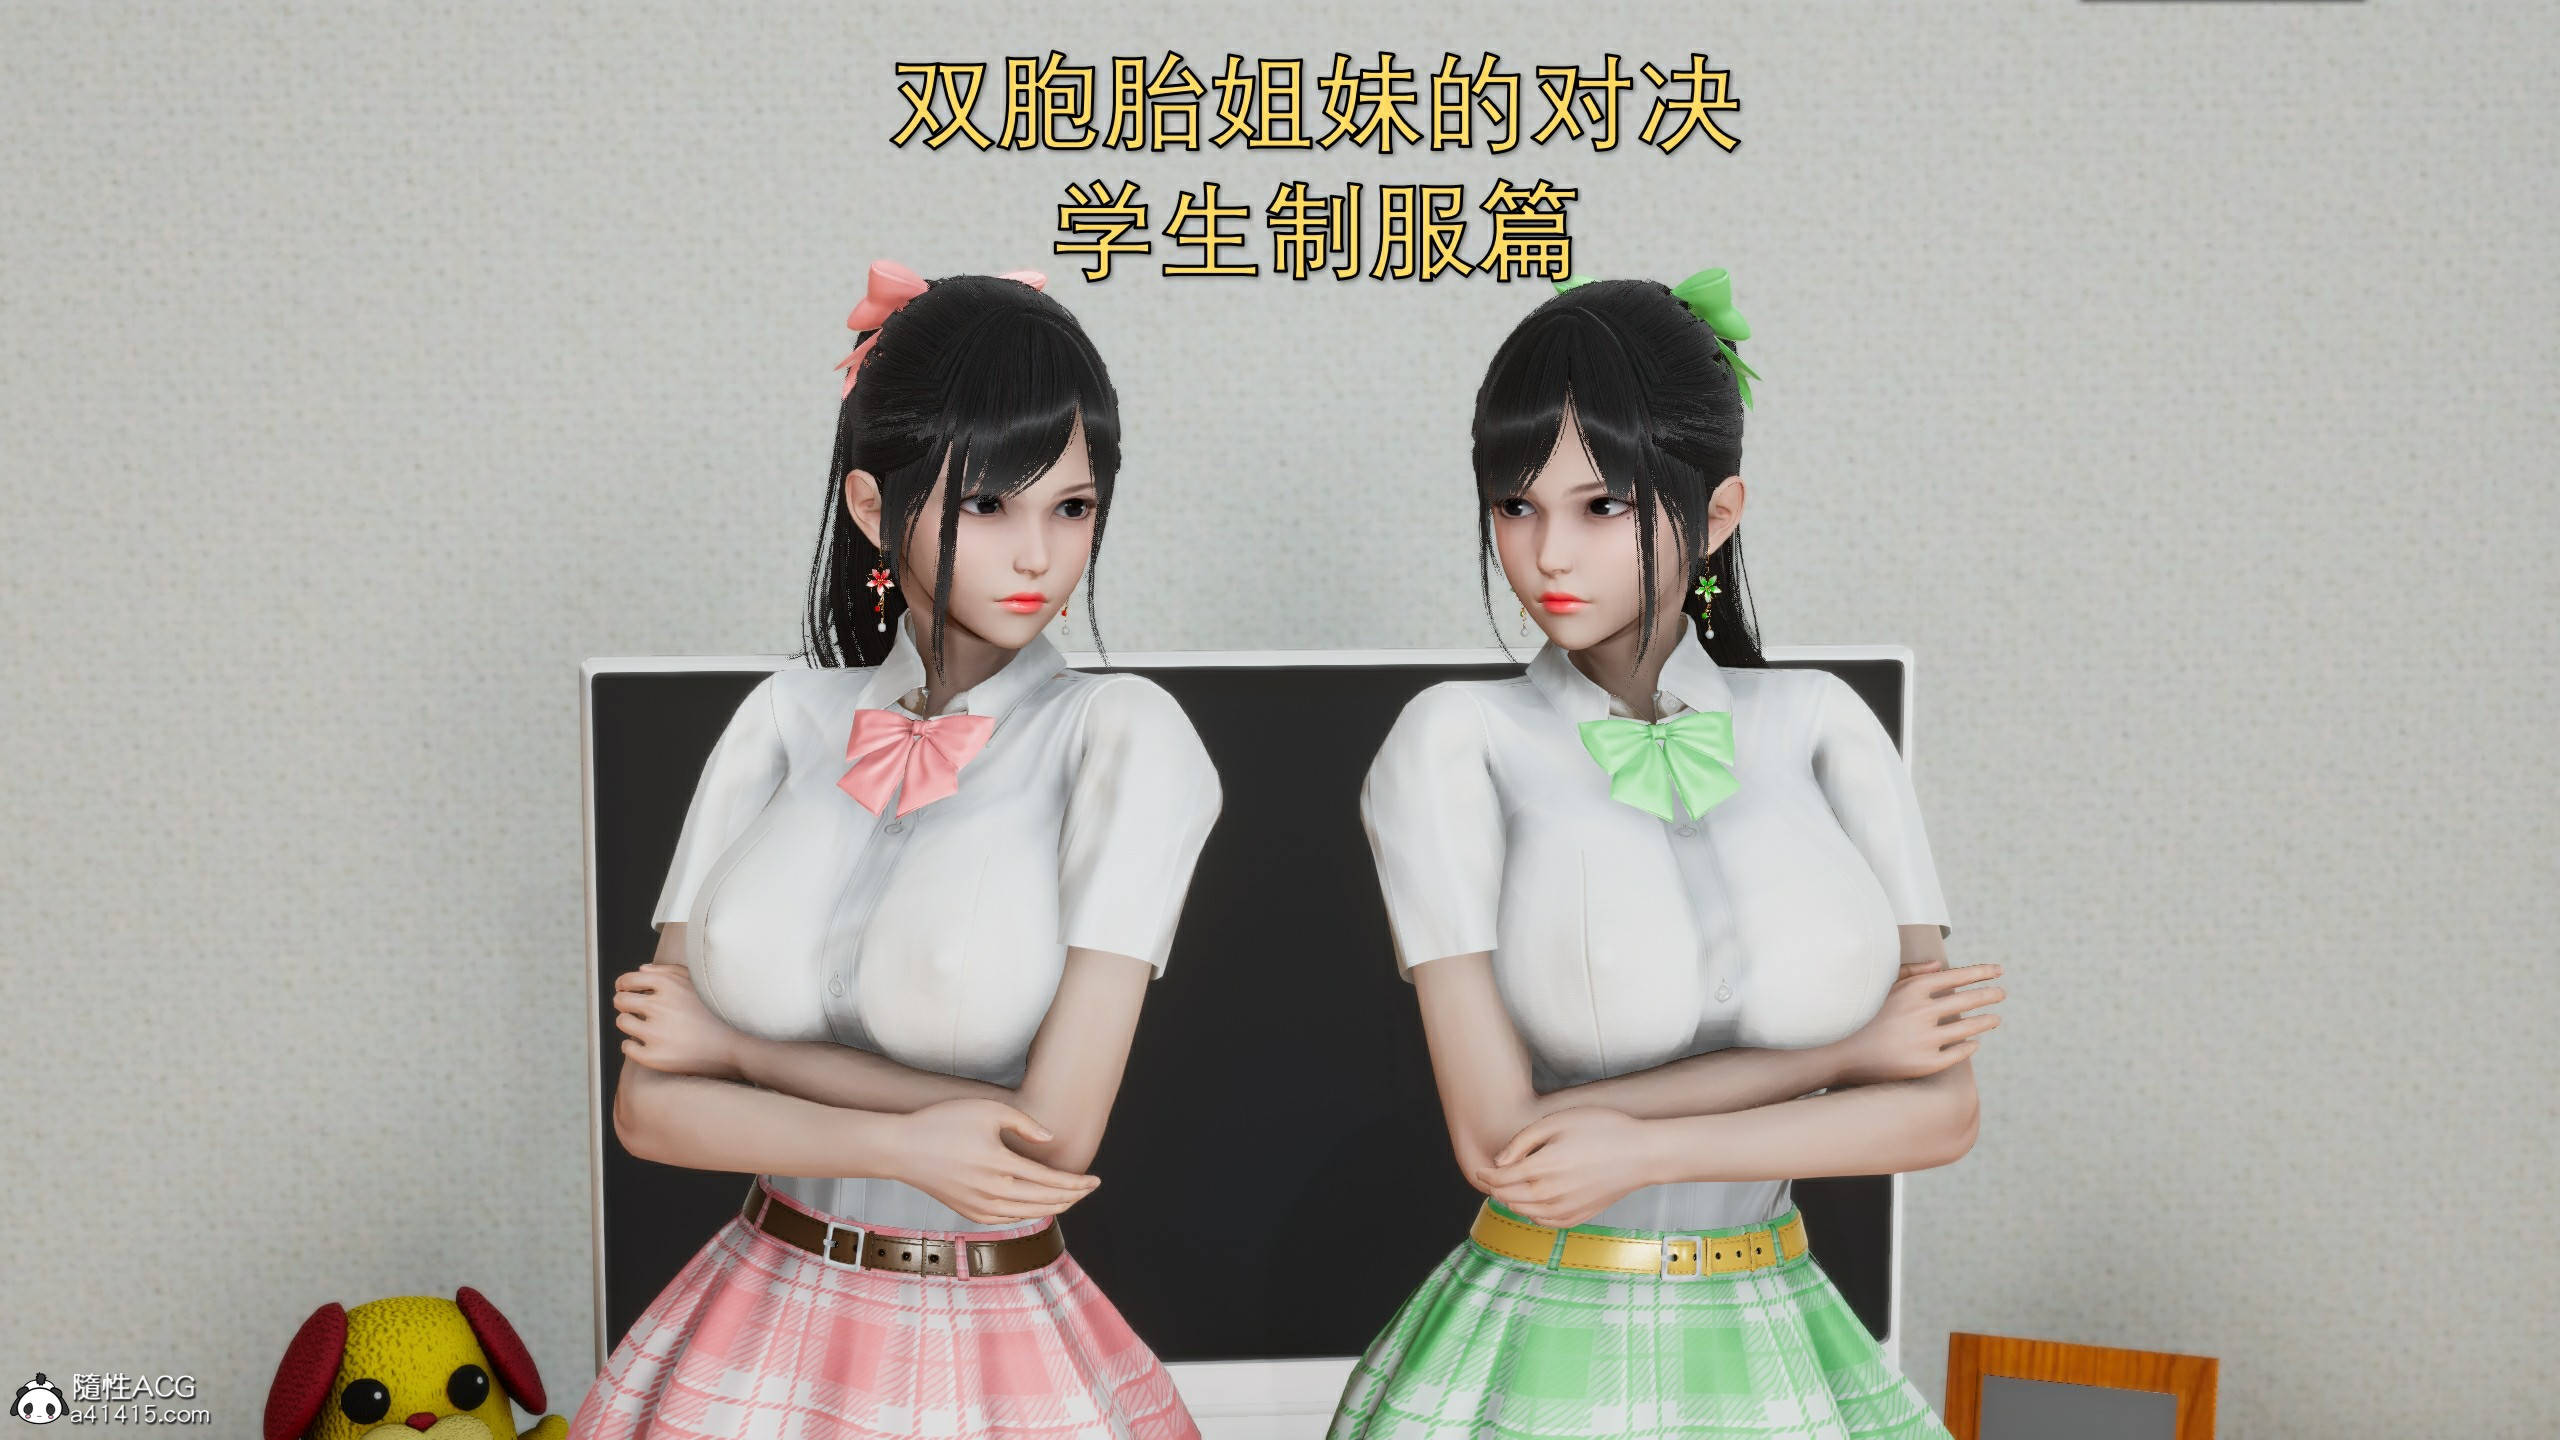 双胞胎姐妹  特别篇-学生制服篇 漫画图片1.jpg